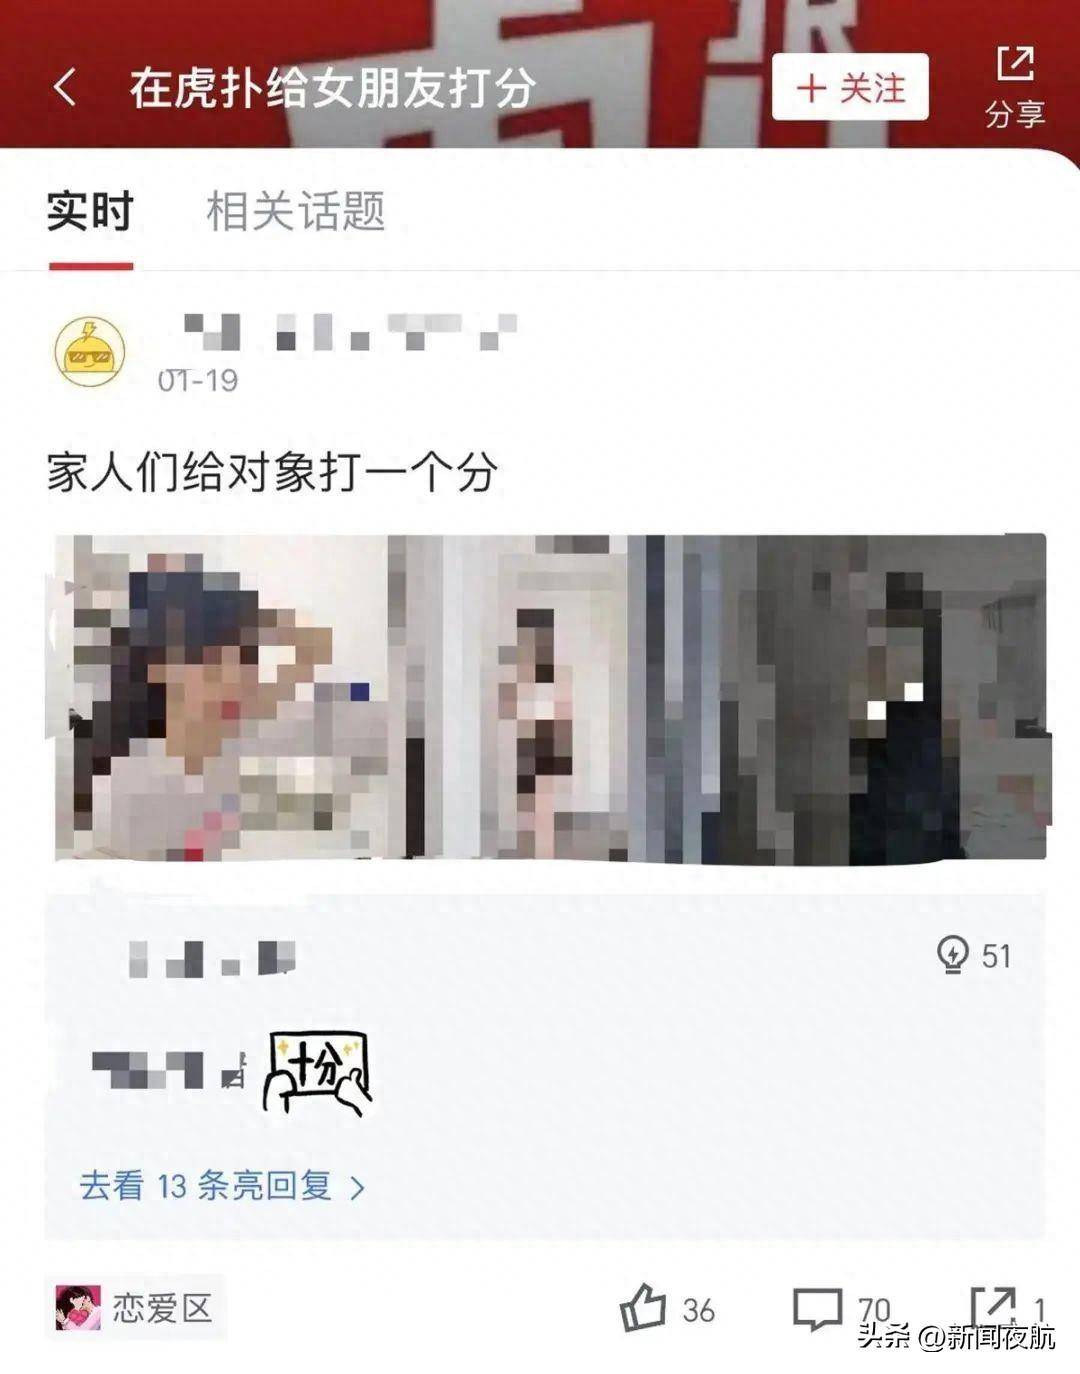 共享女友 app《他趣》中國的上門服務 每次更換下體 - ezone.hk - 教學評測 - Apps 情報 - D170915